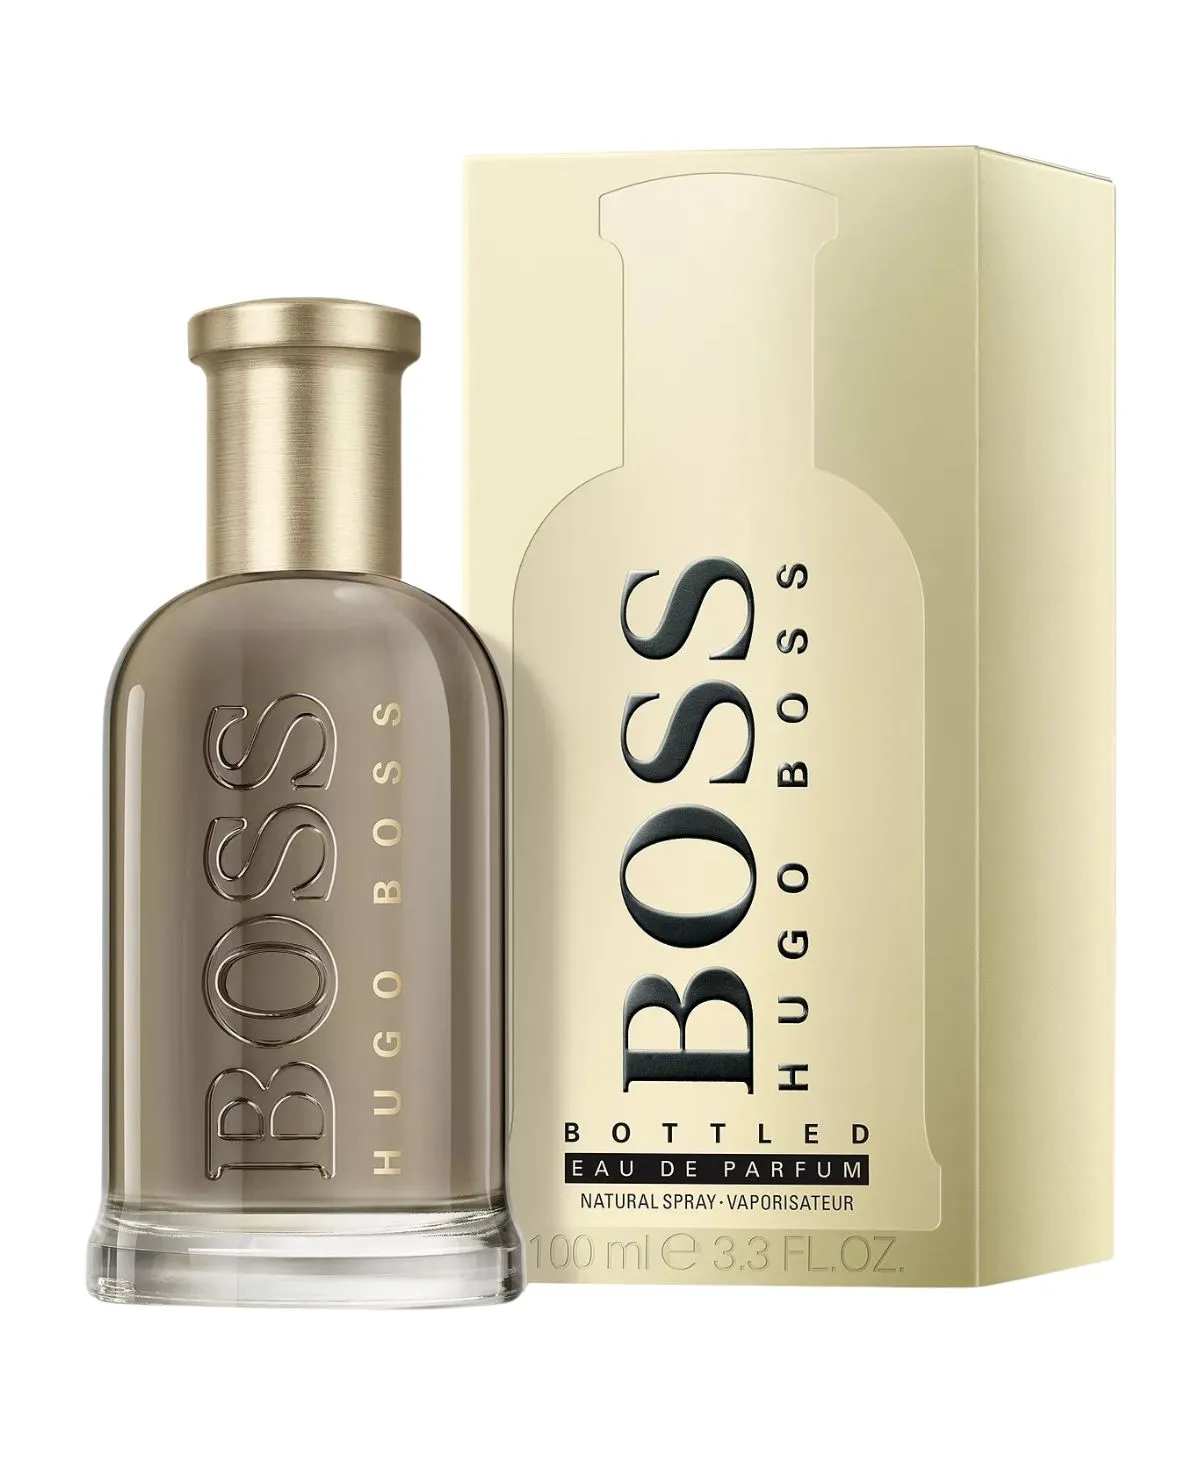 Hugo Boss Boss Bottled for Men Eau de Parfum (EDP) Spray 3.4 oz (100 ml) 3614229828535